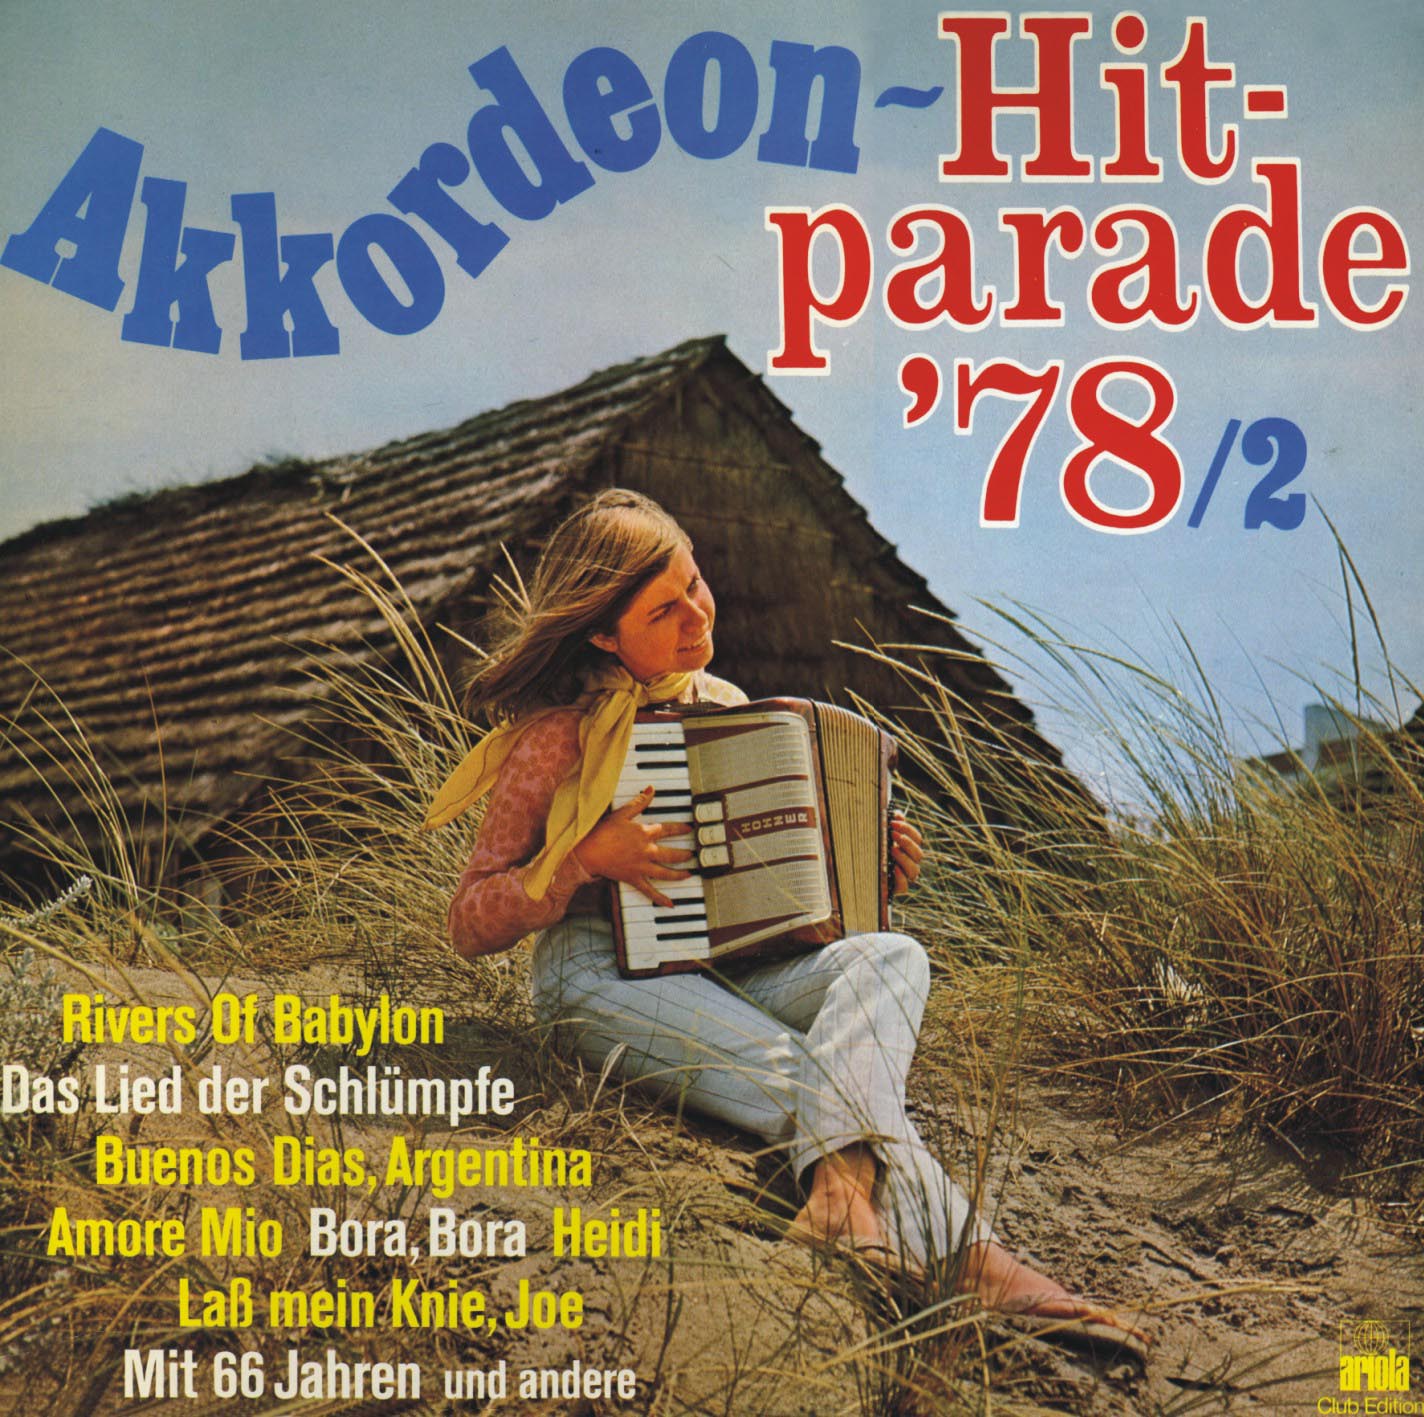 Amore mio mp3. LP Akkordeon-Orchester 1957 St. Tonis e.v. Happy Swing. Amada Mia, Amore mio! Ноты.